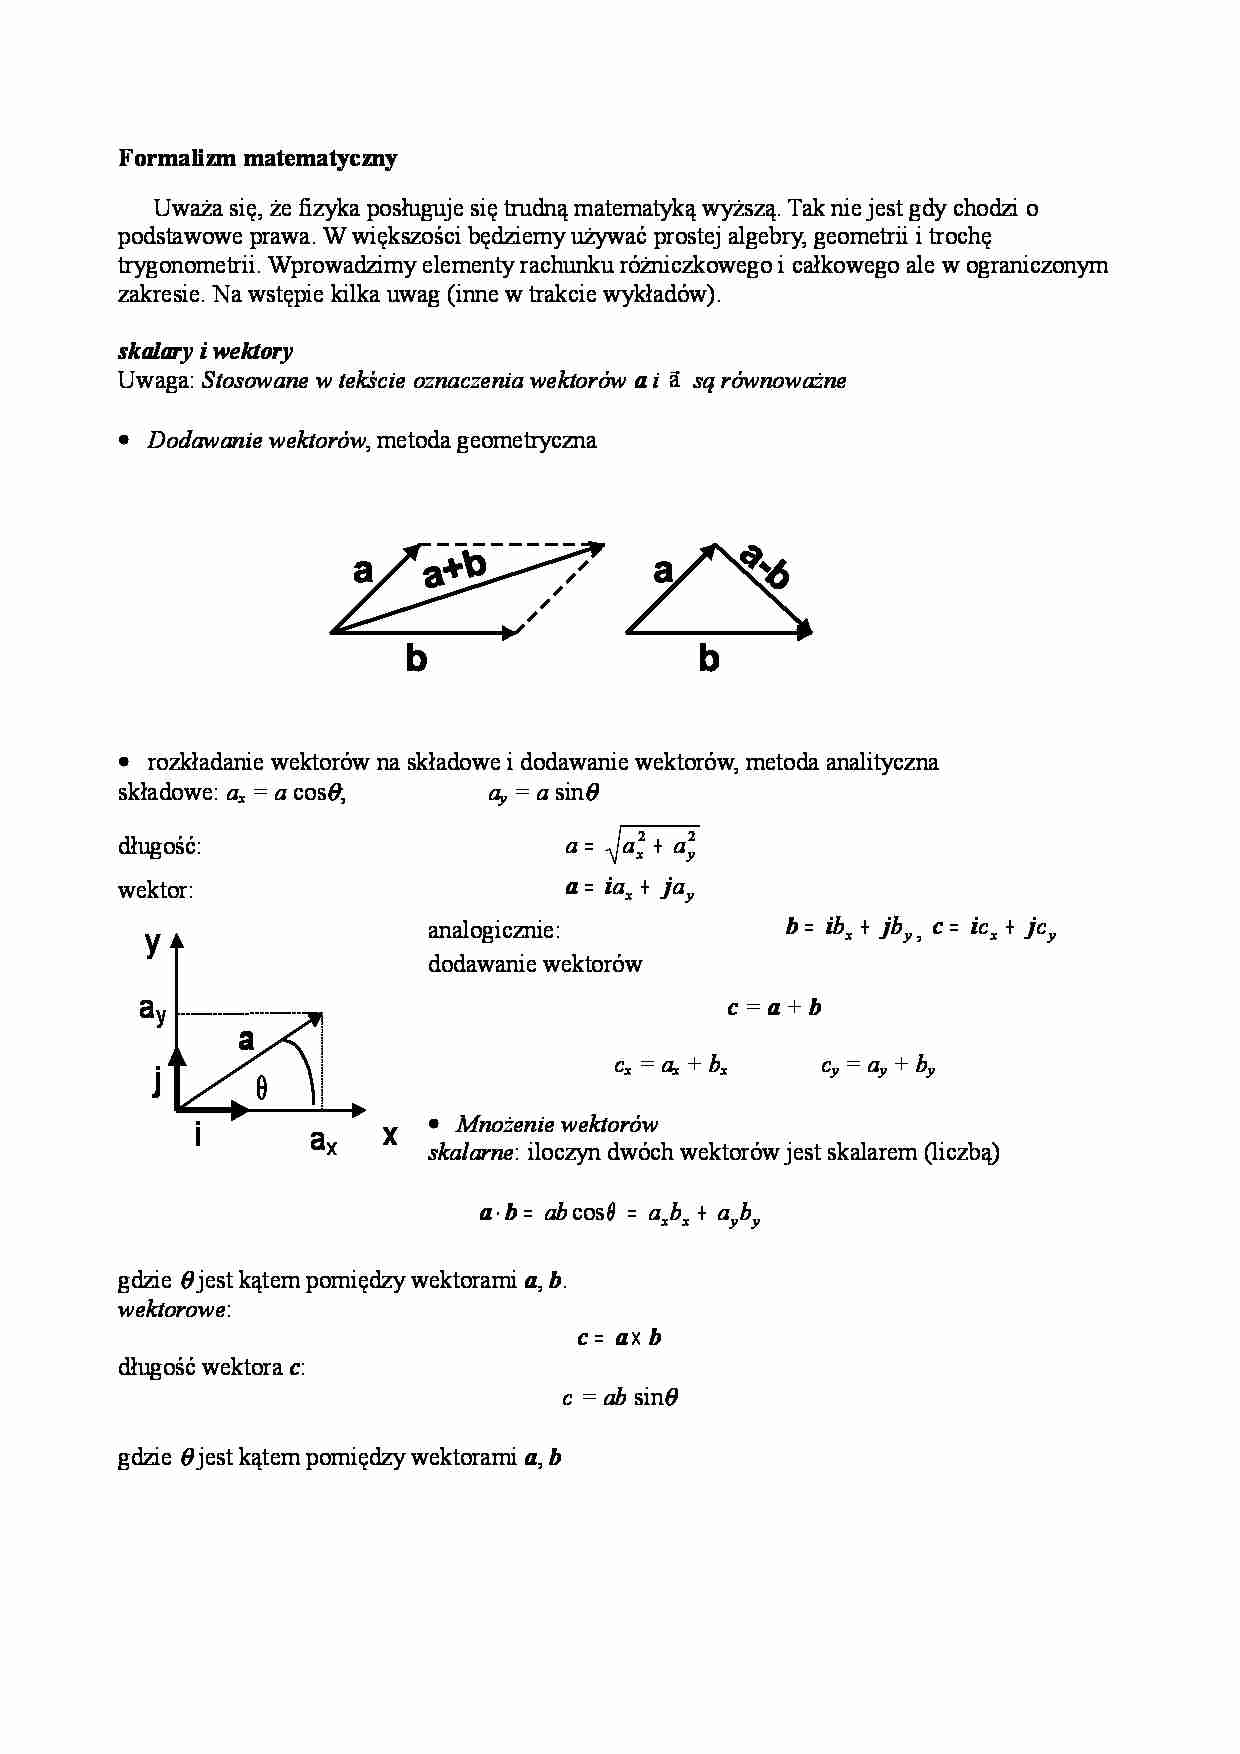 Fizyka - formalizm matematyczny - strona 1